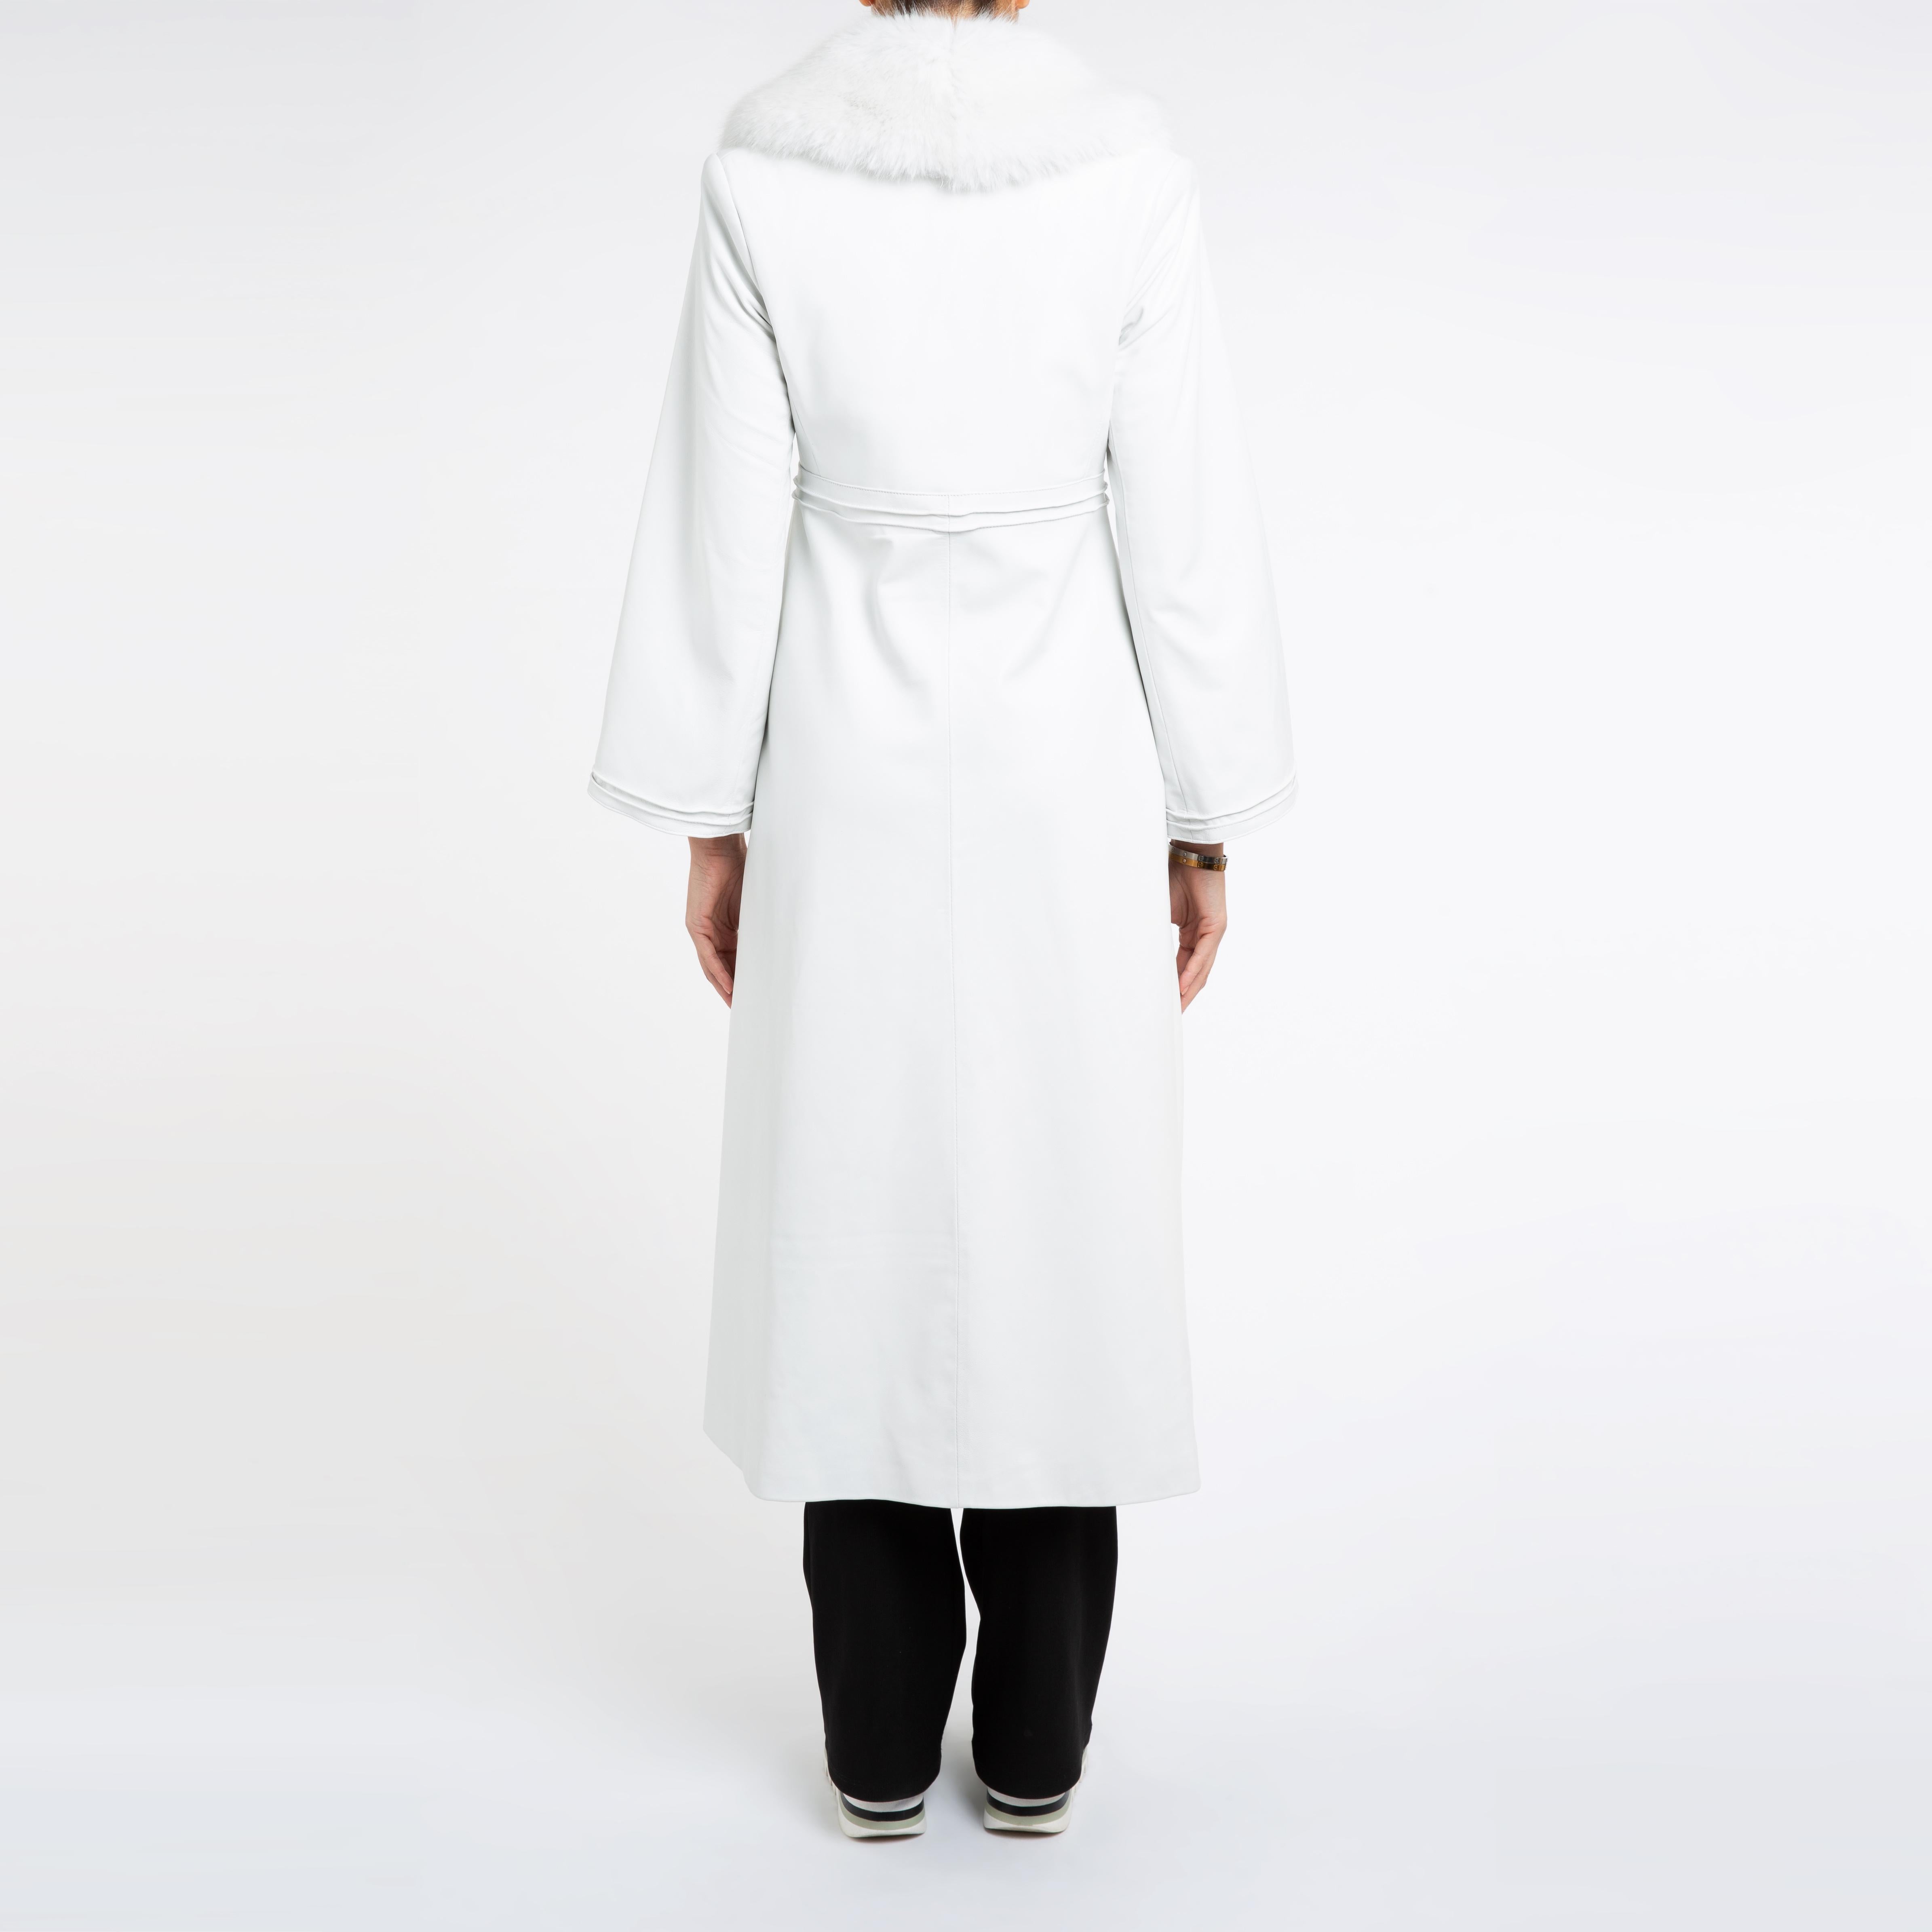 Women's Verheyen London Edward Leather Coat in Aquamarine & White Faux Fur - Size 10 UK 